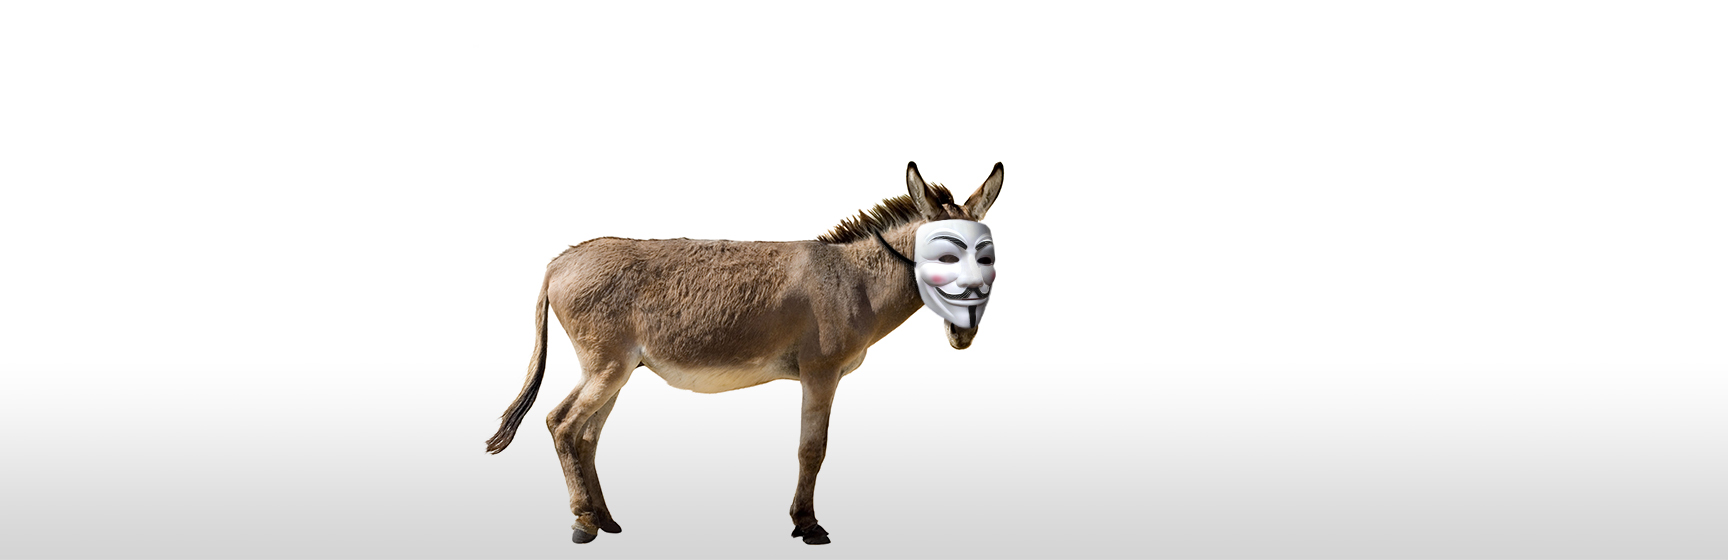 A donkey wearing a mask.